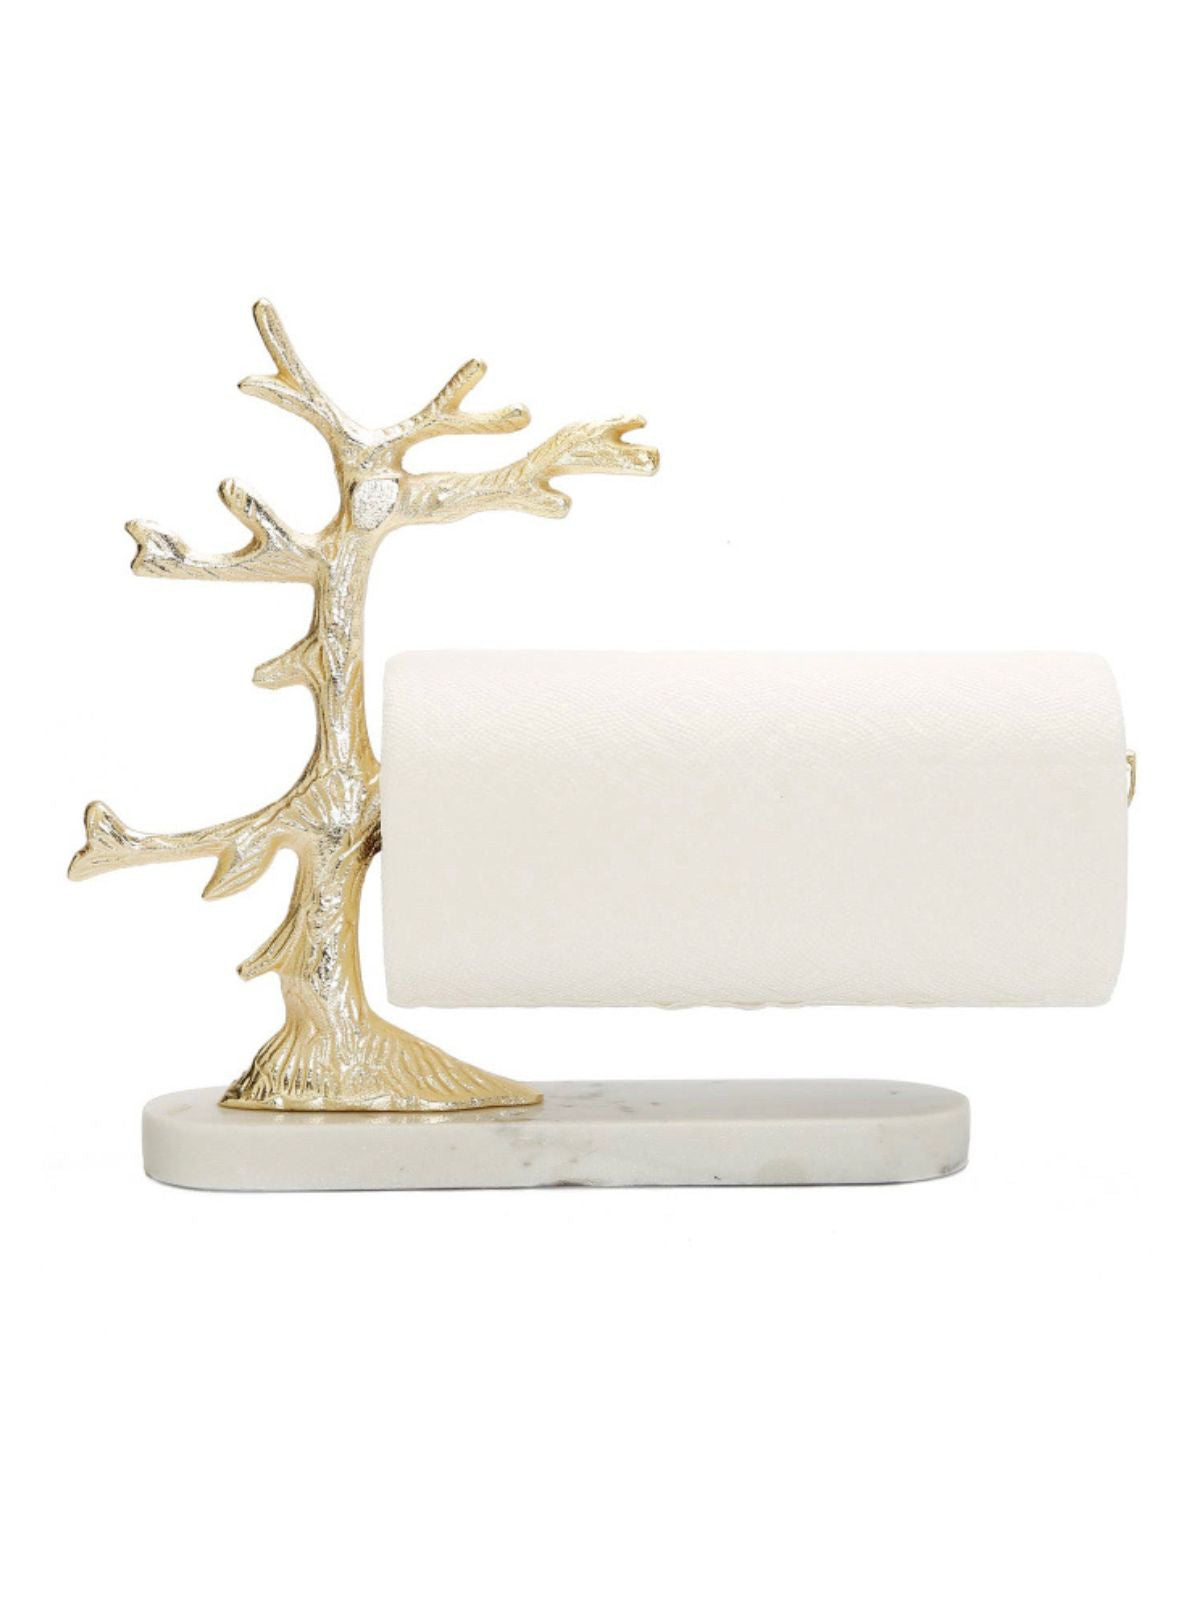 Gold Tree Design Paper Towel Holder On Marble Base.